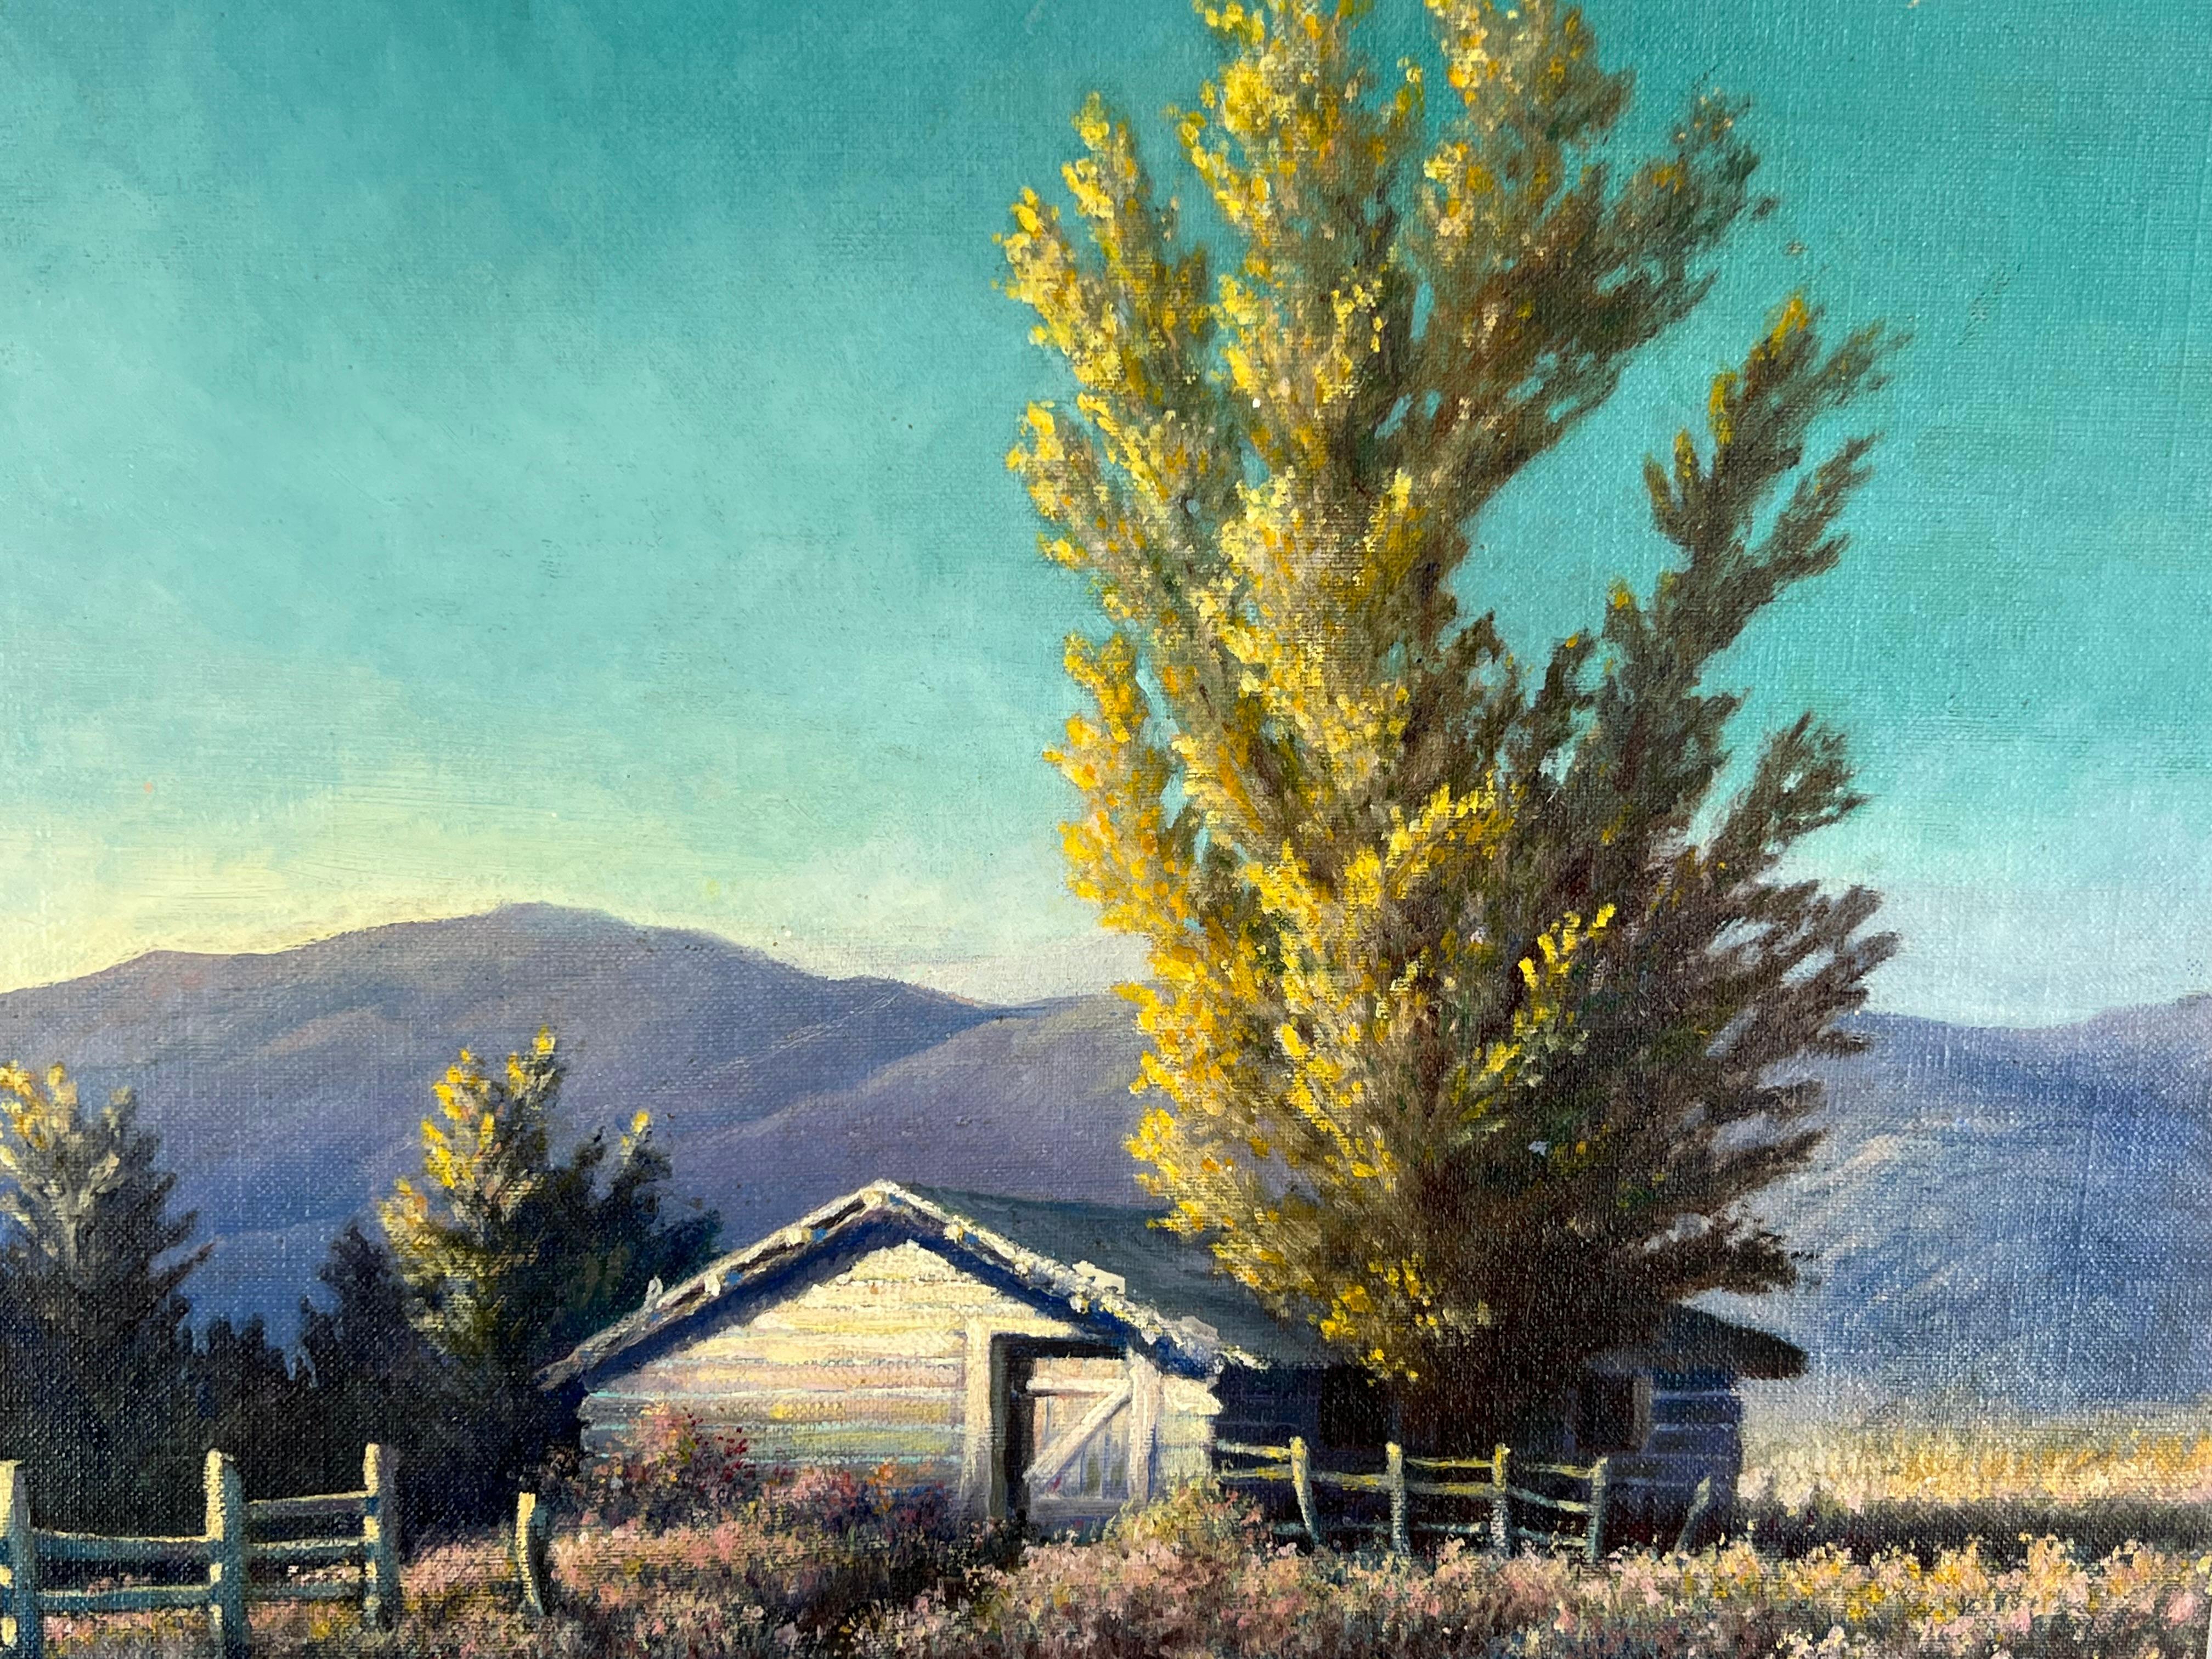 Tisch und Korral in den California Hills – 1930er-Jahre (Amerikanischer Impressionismus), Painting, von Herbert A. Schmidt